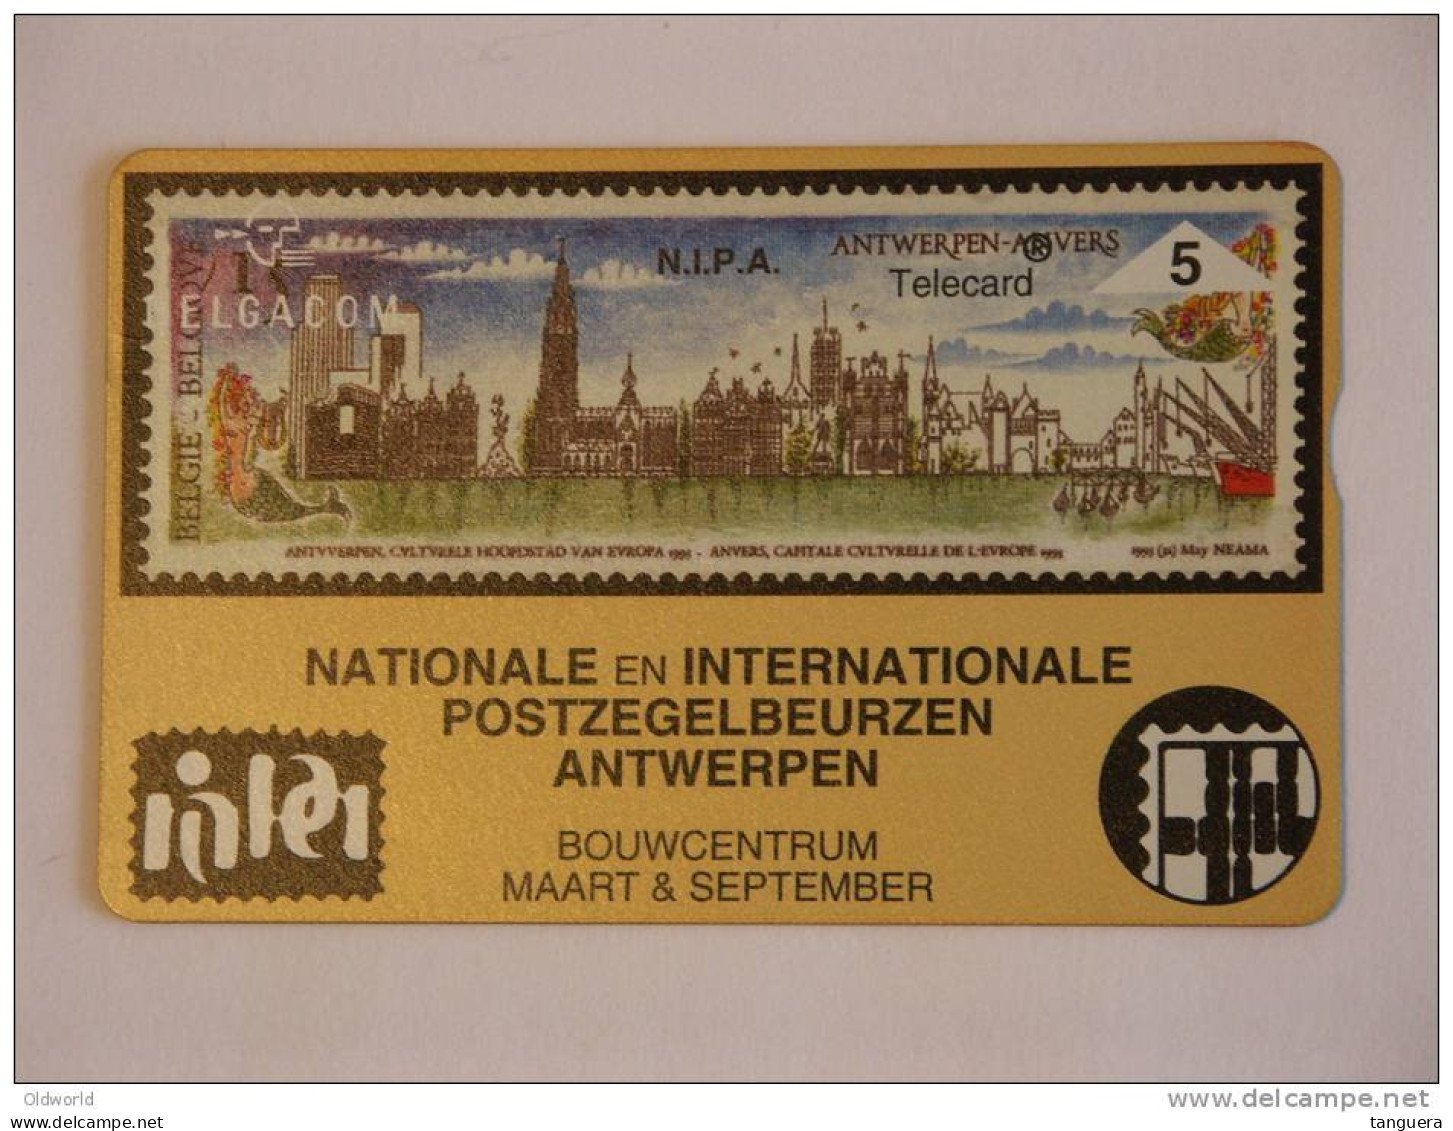 Telefoonkaart Telecard Belgacom Belgique België Privee N.I.P.A Beurs Bourse Timbre Postzegels Mint - Ohne Chip